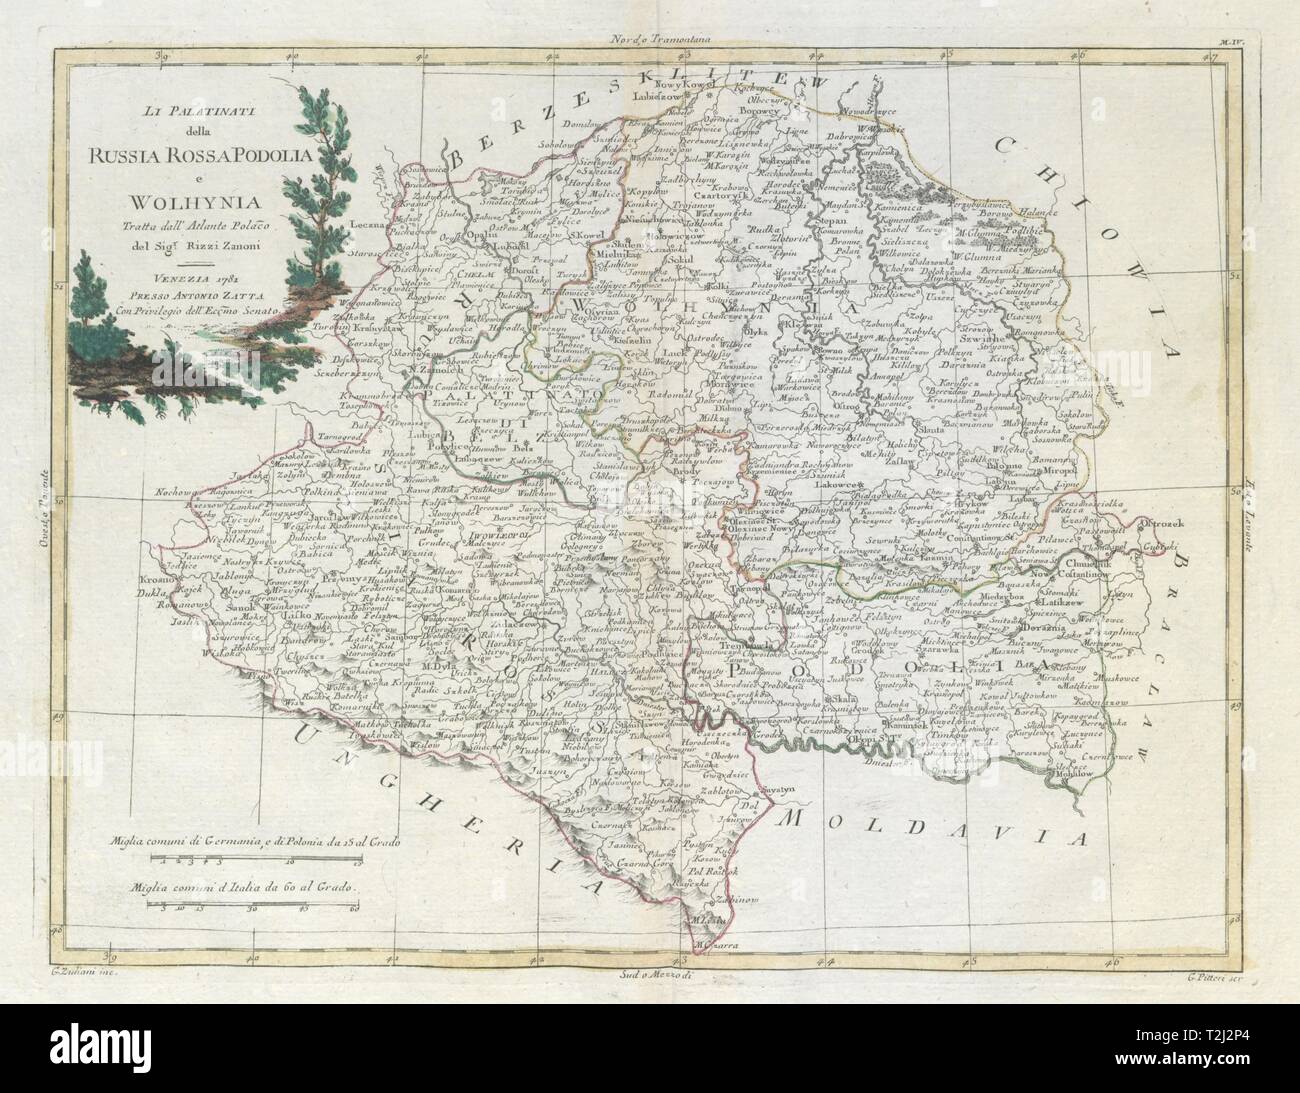 'Li Palatinati della Russia Rossa, Podolia…' SE Poland W Ukraine. ZATTA 1783 map Stock Photo